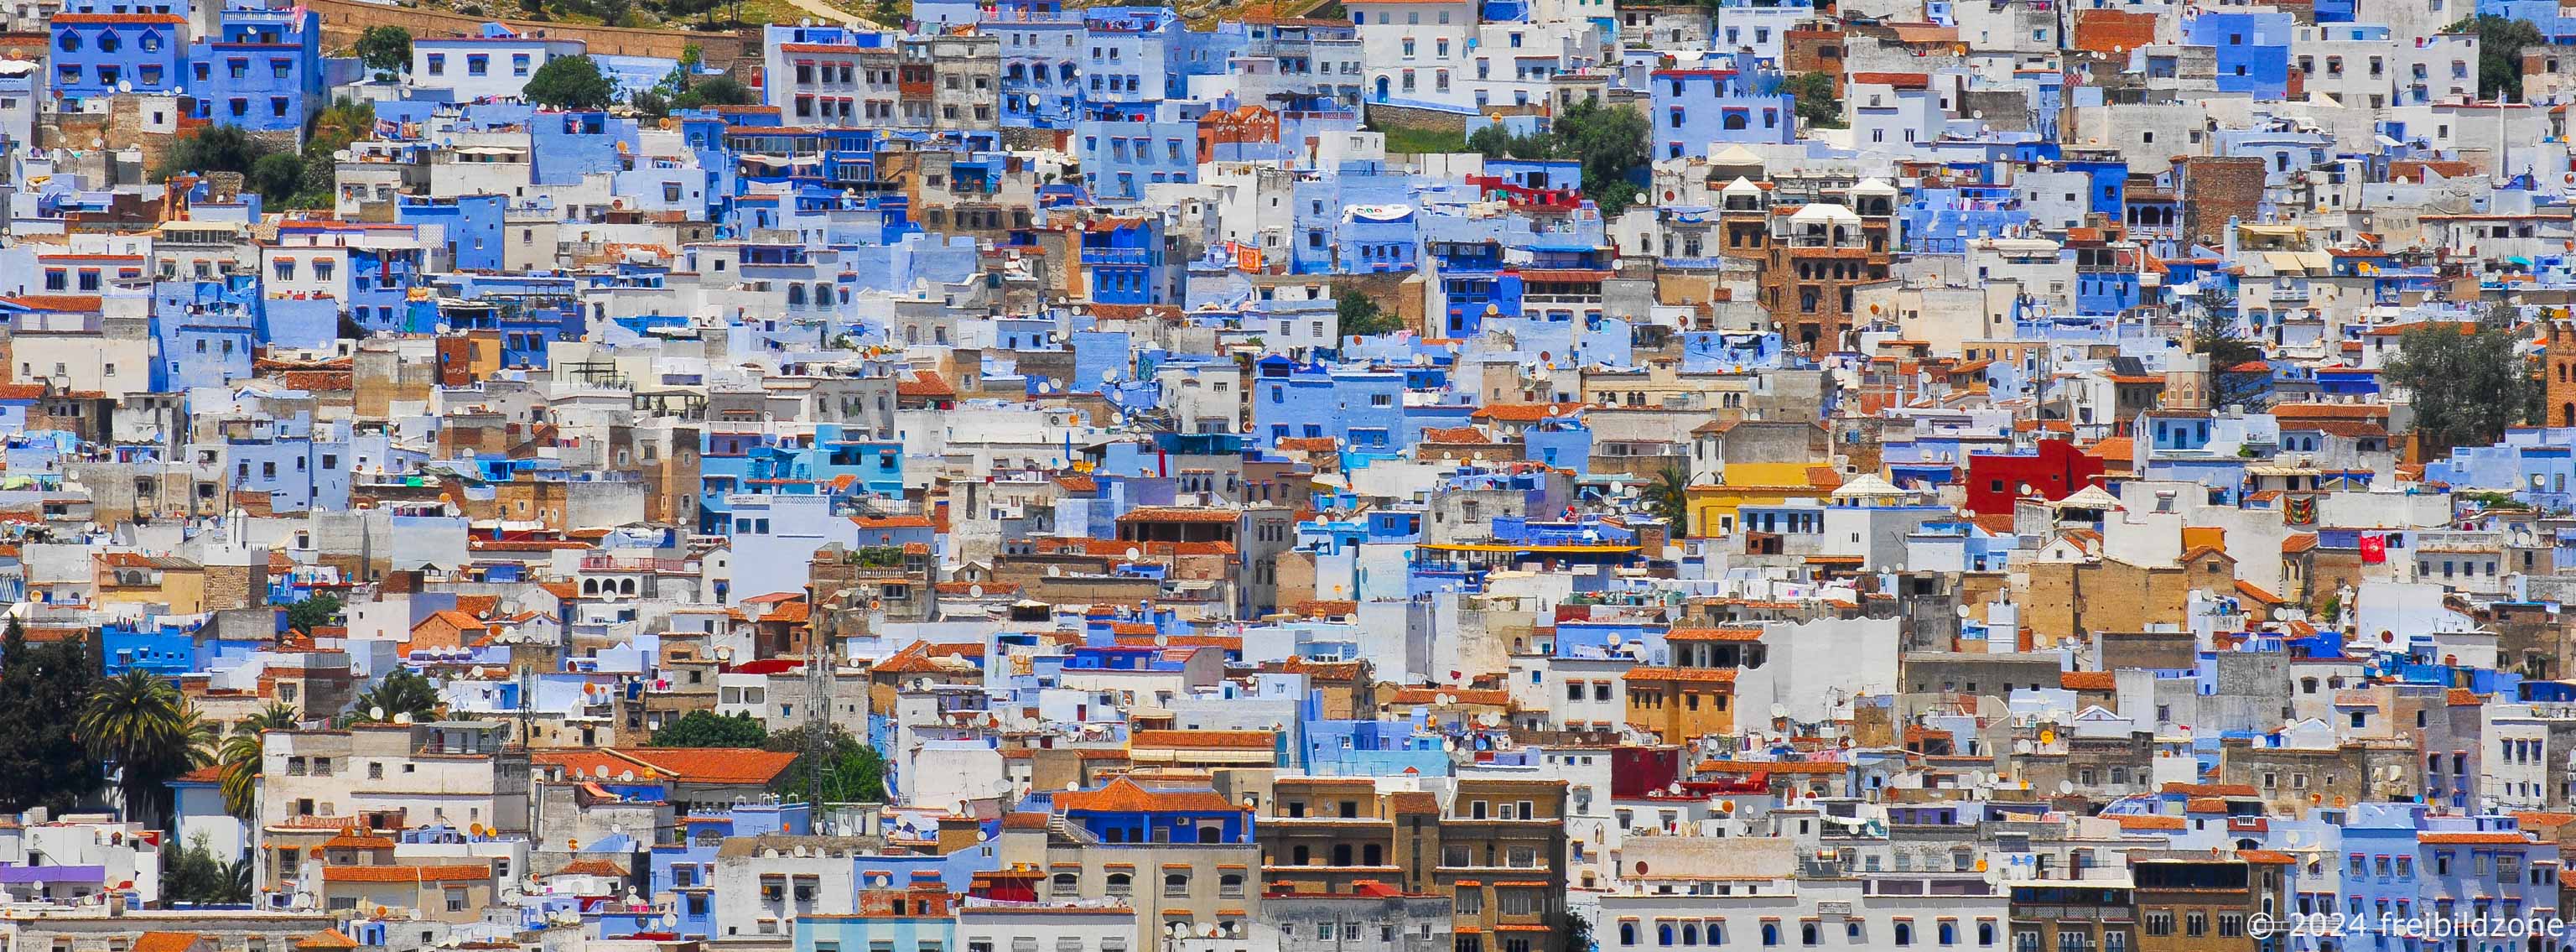 La ville bleue, Chefchaouen, Morocco